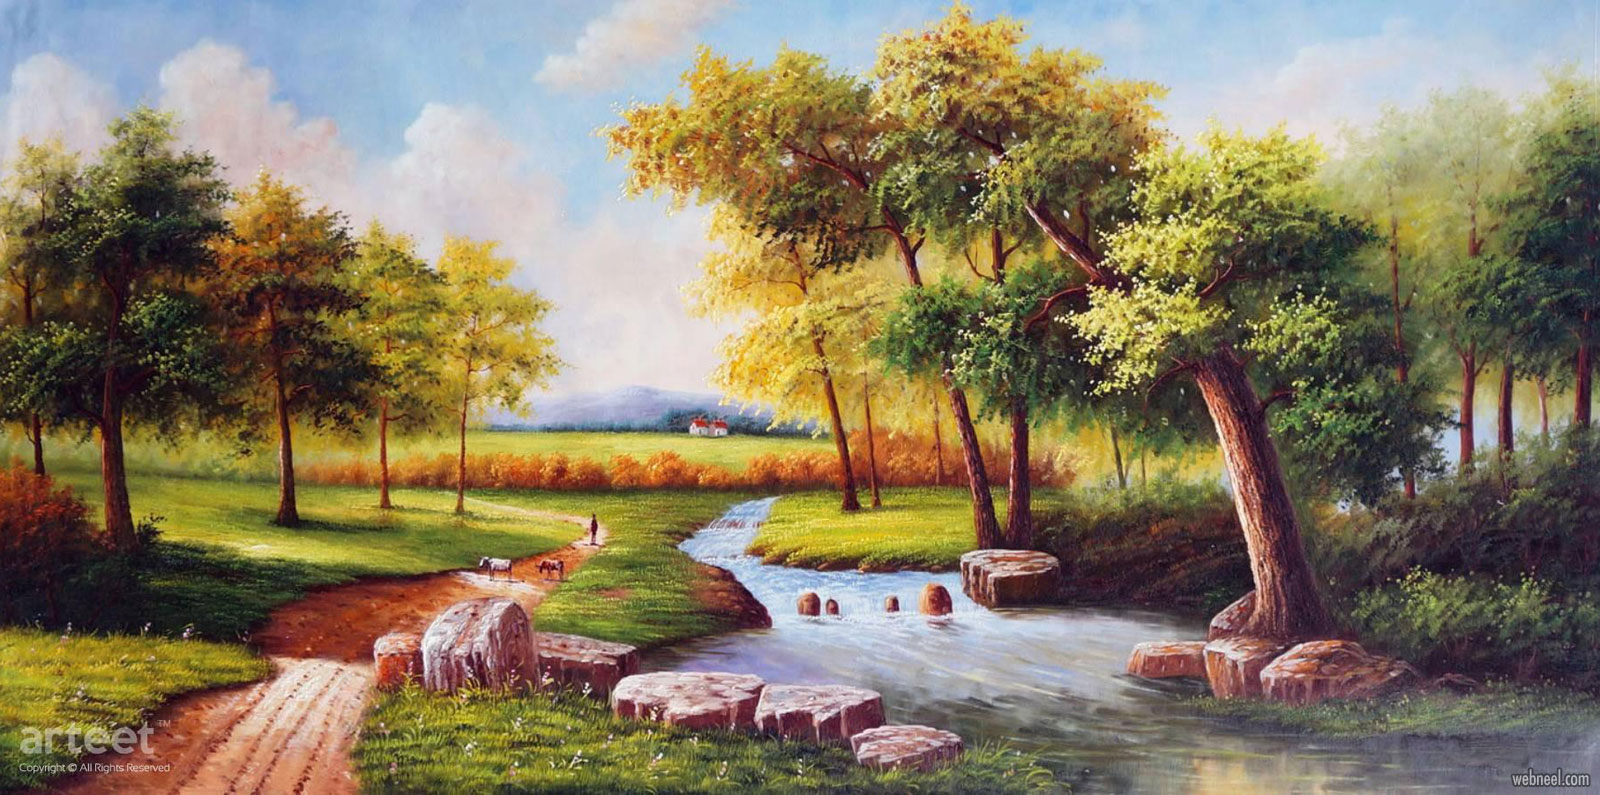 landscape artwork oil painting scenery by arteet